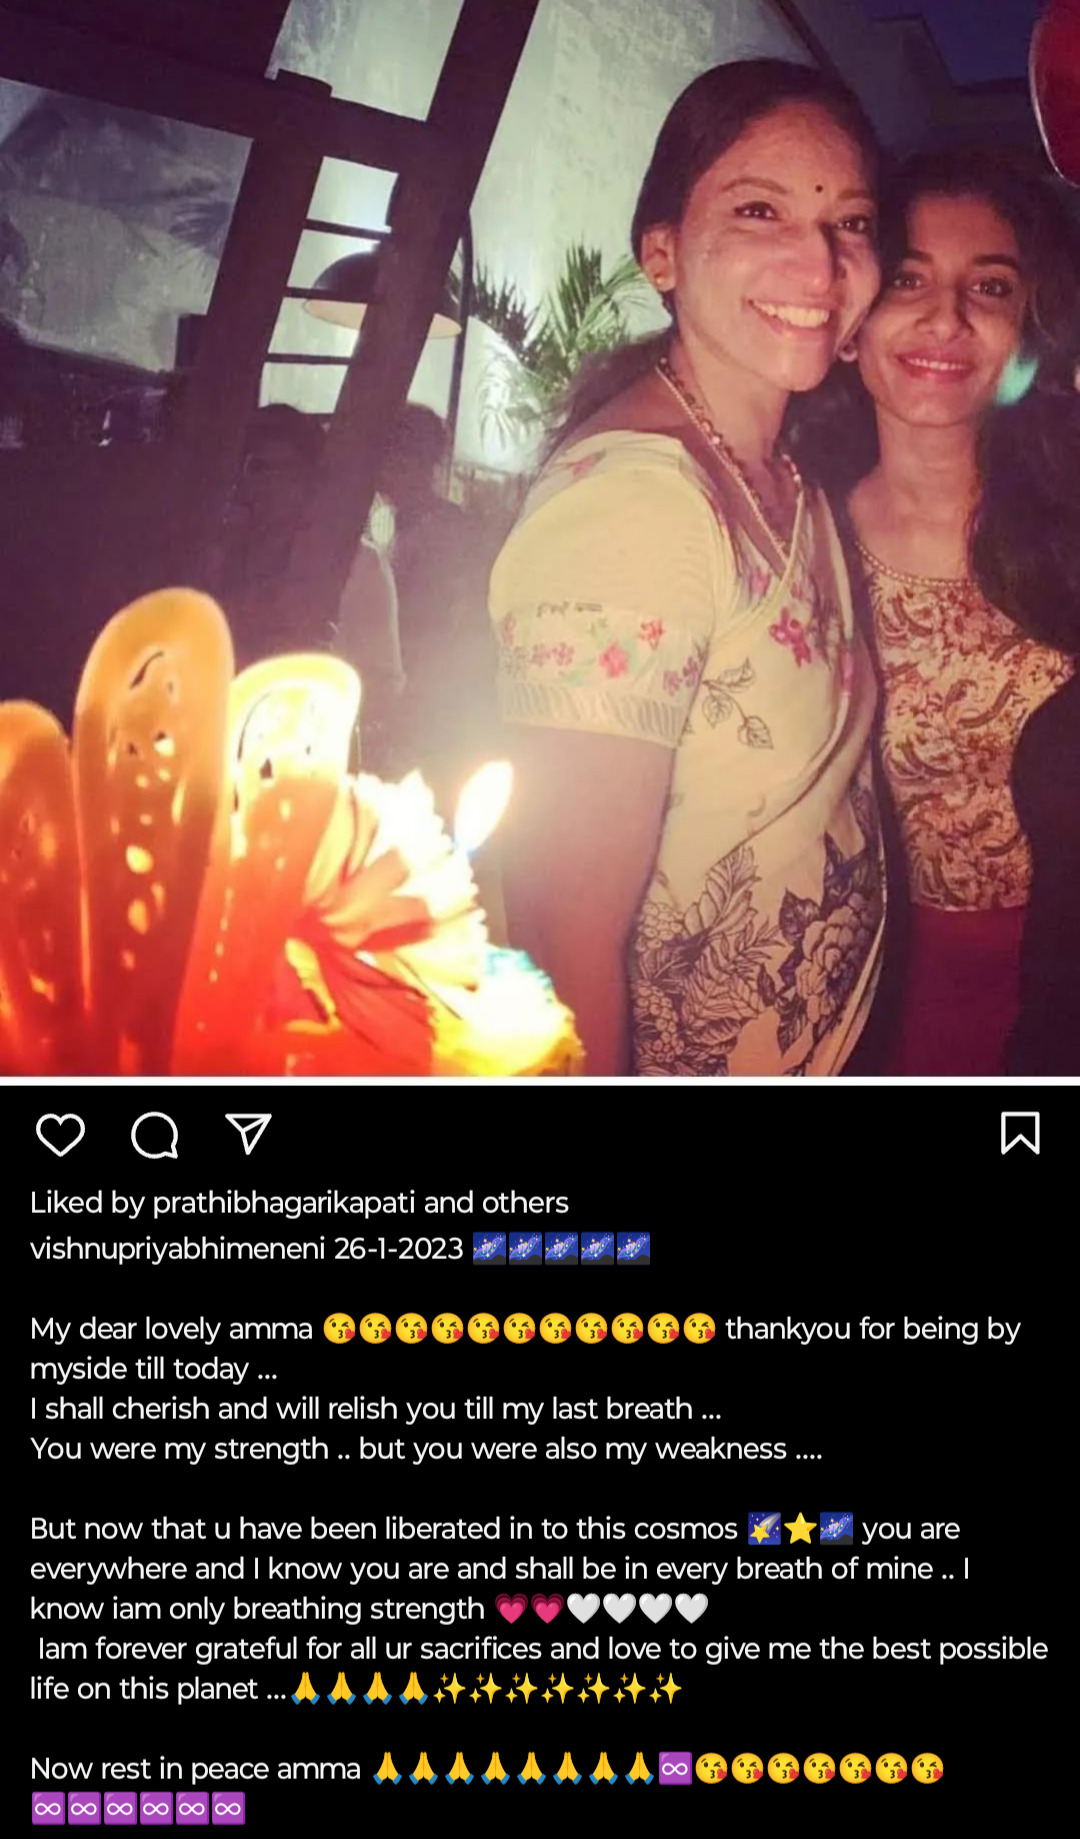 Post shared by Vishnu Priya on her Instagram